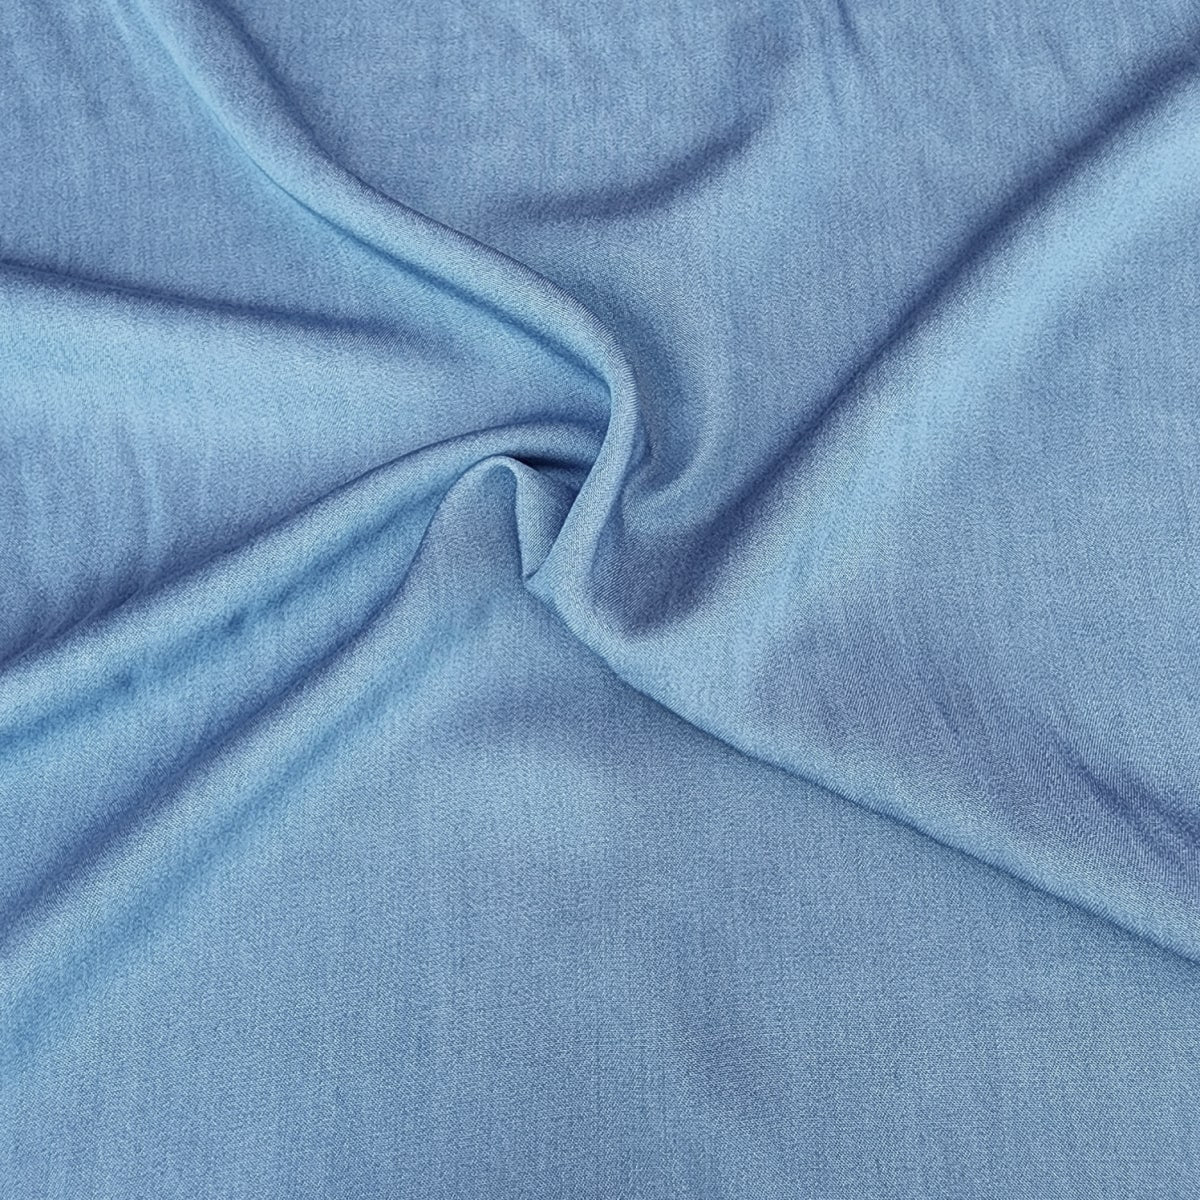 Chambray fabric - light blue